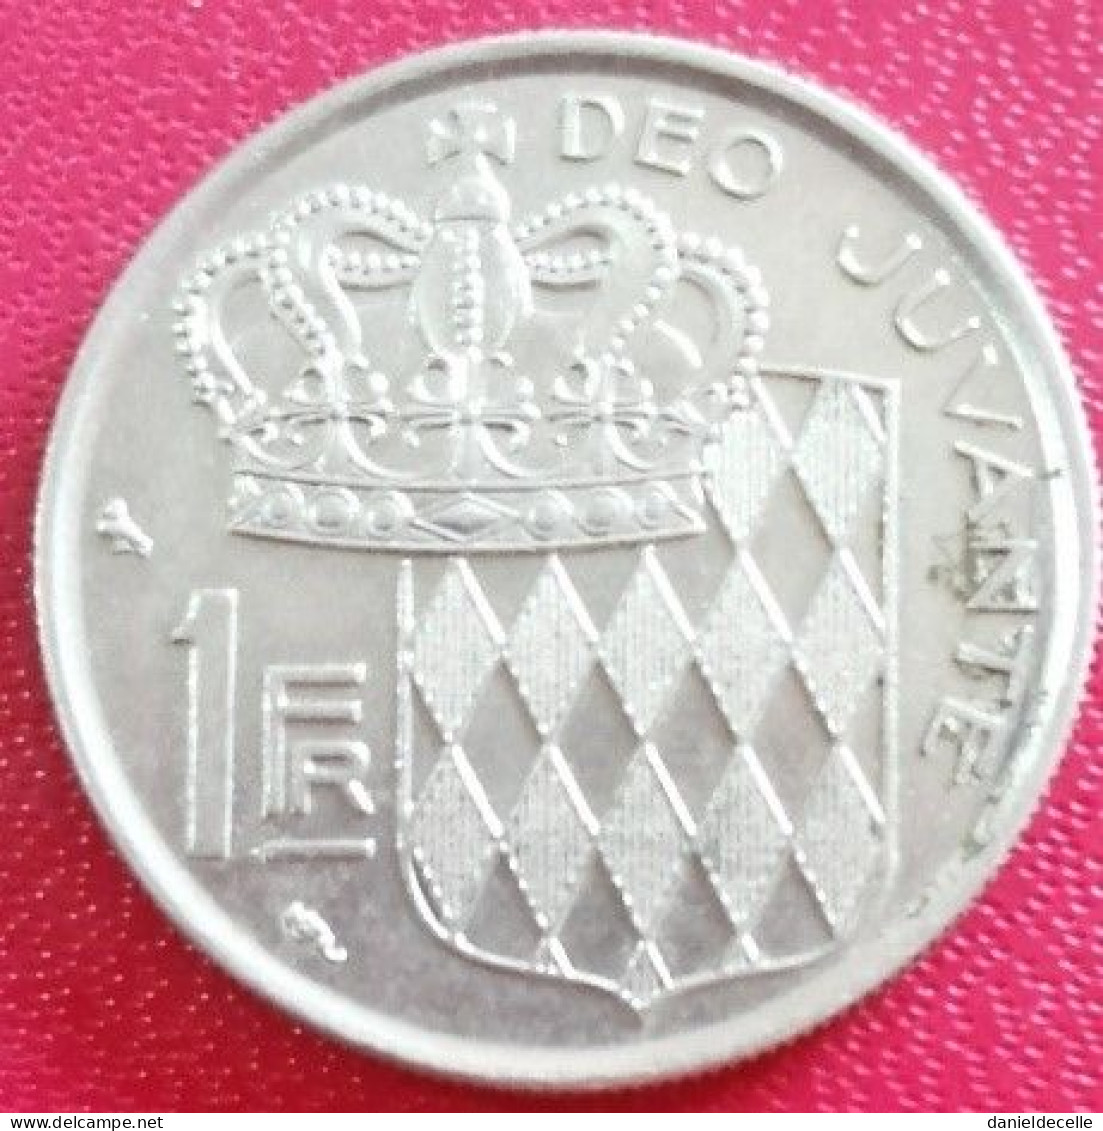 1 Franc Monaco 1960 (TTB+) - 1960-2001 New Francs